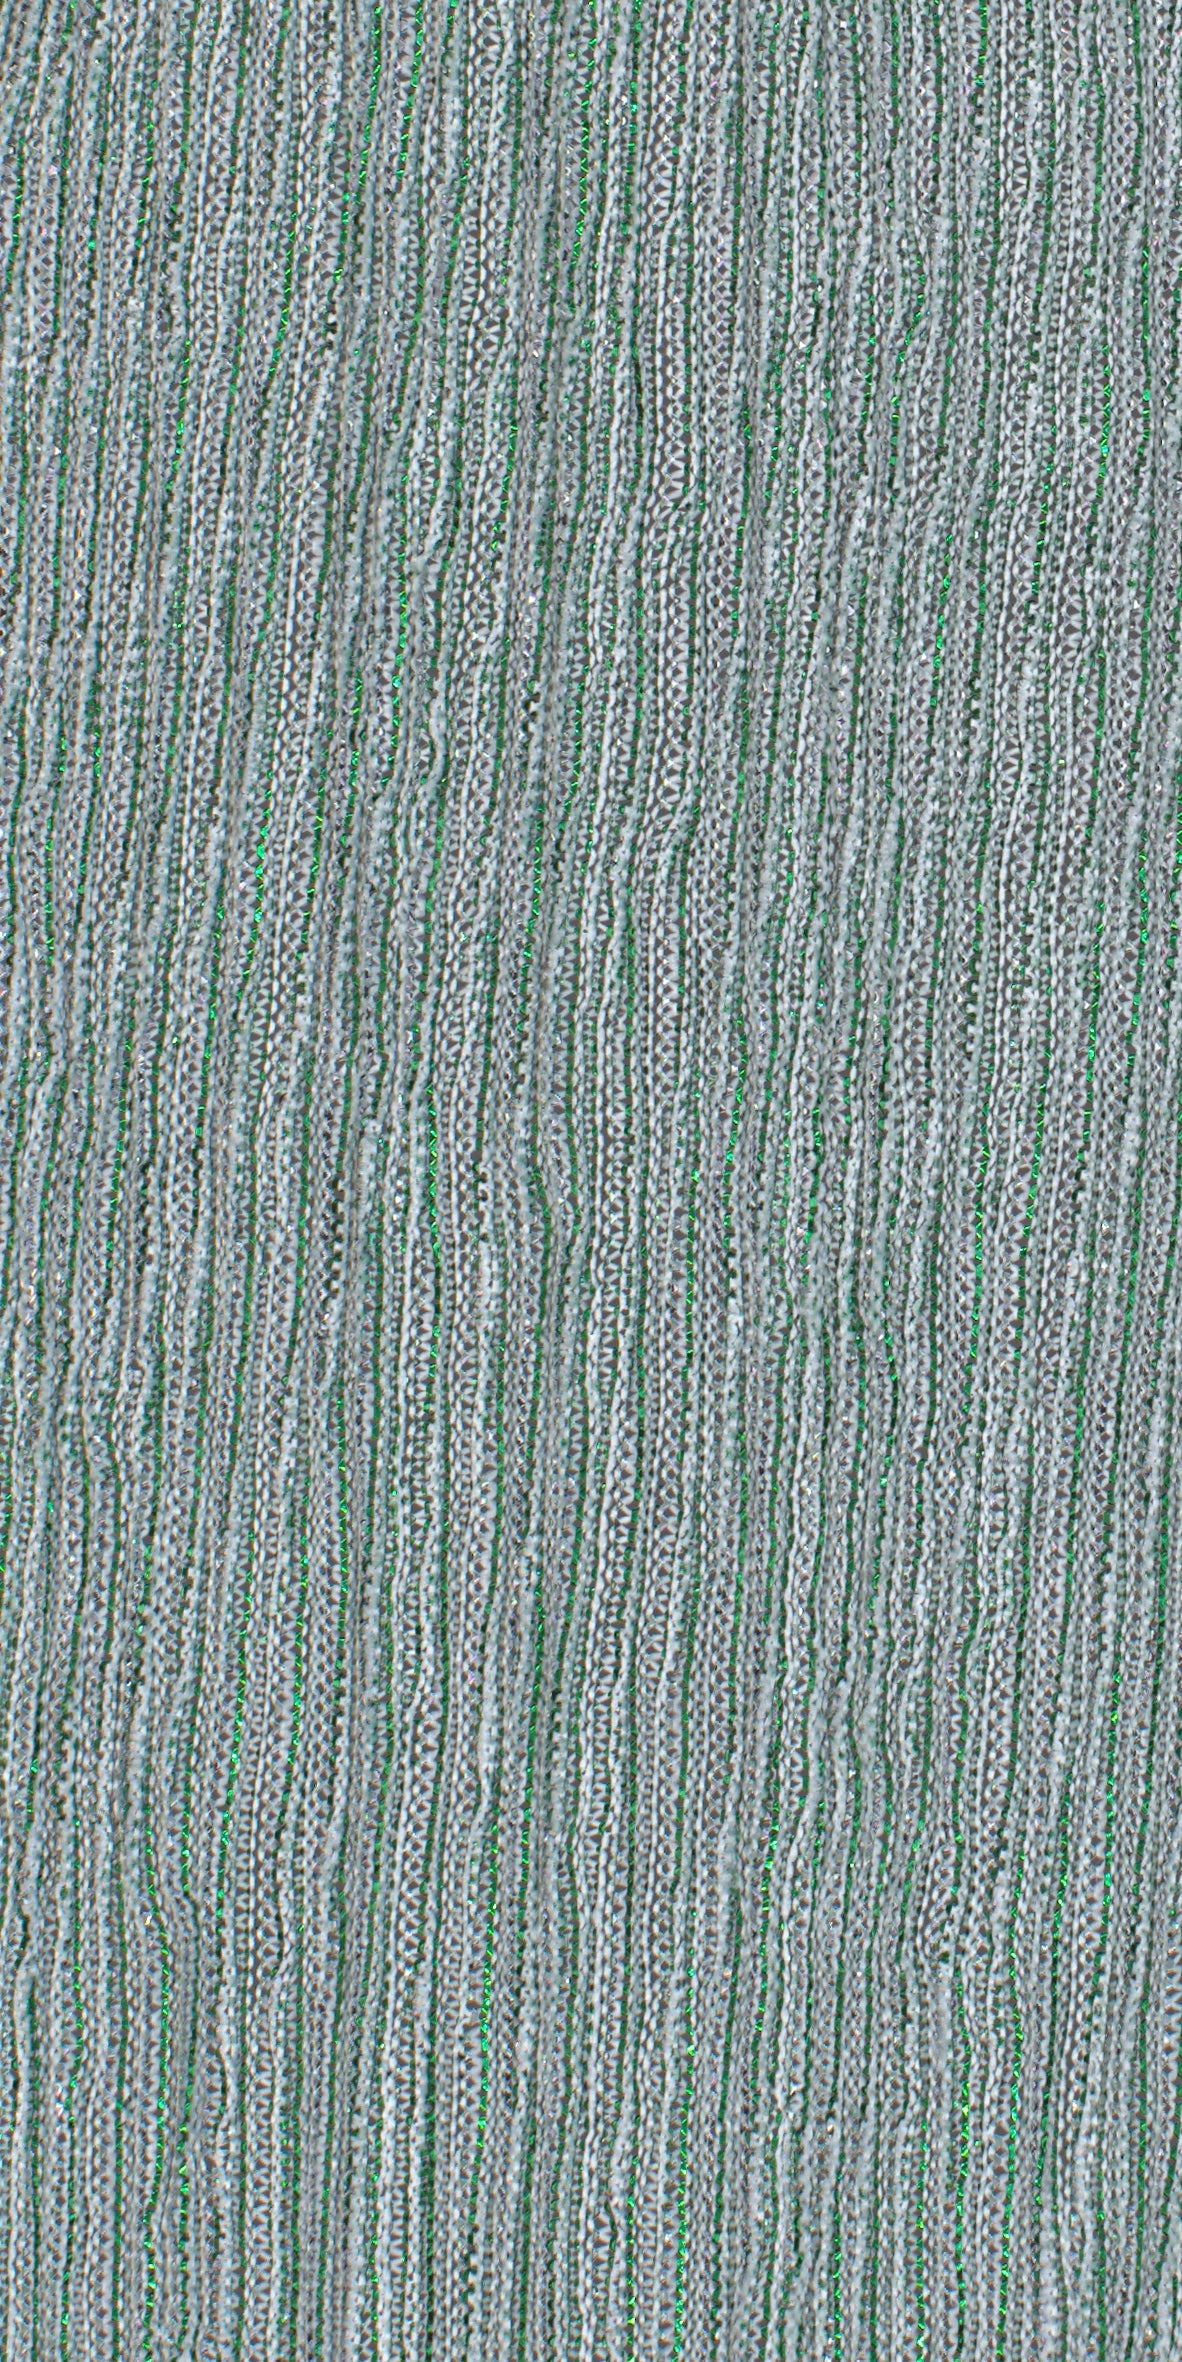 12006-13 Green Silver Metallic Pleat Plain Dyed Blend 126g/yd 56" blend green knit metallic plain dyed pleat ppl new silver Metallic, Pleat - knit fabric - woven fabric - fabric company - fabric wholesale - fabric b2b - fabric factory - high quality fabric - hong kong fabric - fabric hk - acetate fabric - cotton fabric - linen fabric - metallic fabric - nylon fabric - polyester fabric - spandex fabric - chun wing hing - cwh hk - fabric worldwide ship - 針織布 - 梳織布 - 布料公司- 布料批發 - 香港布料 - 秦榮興